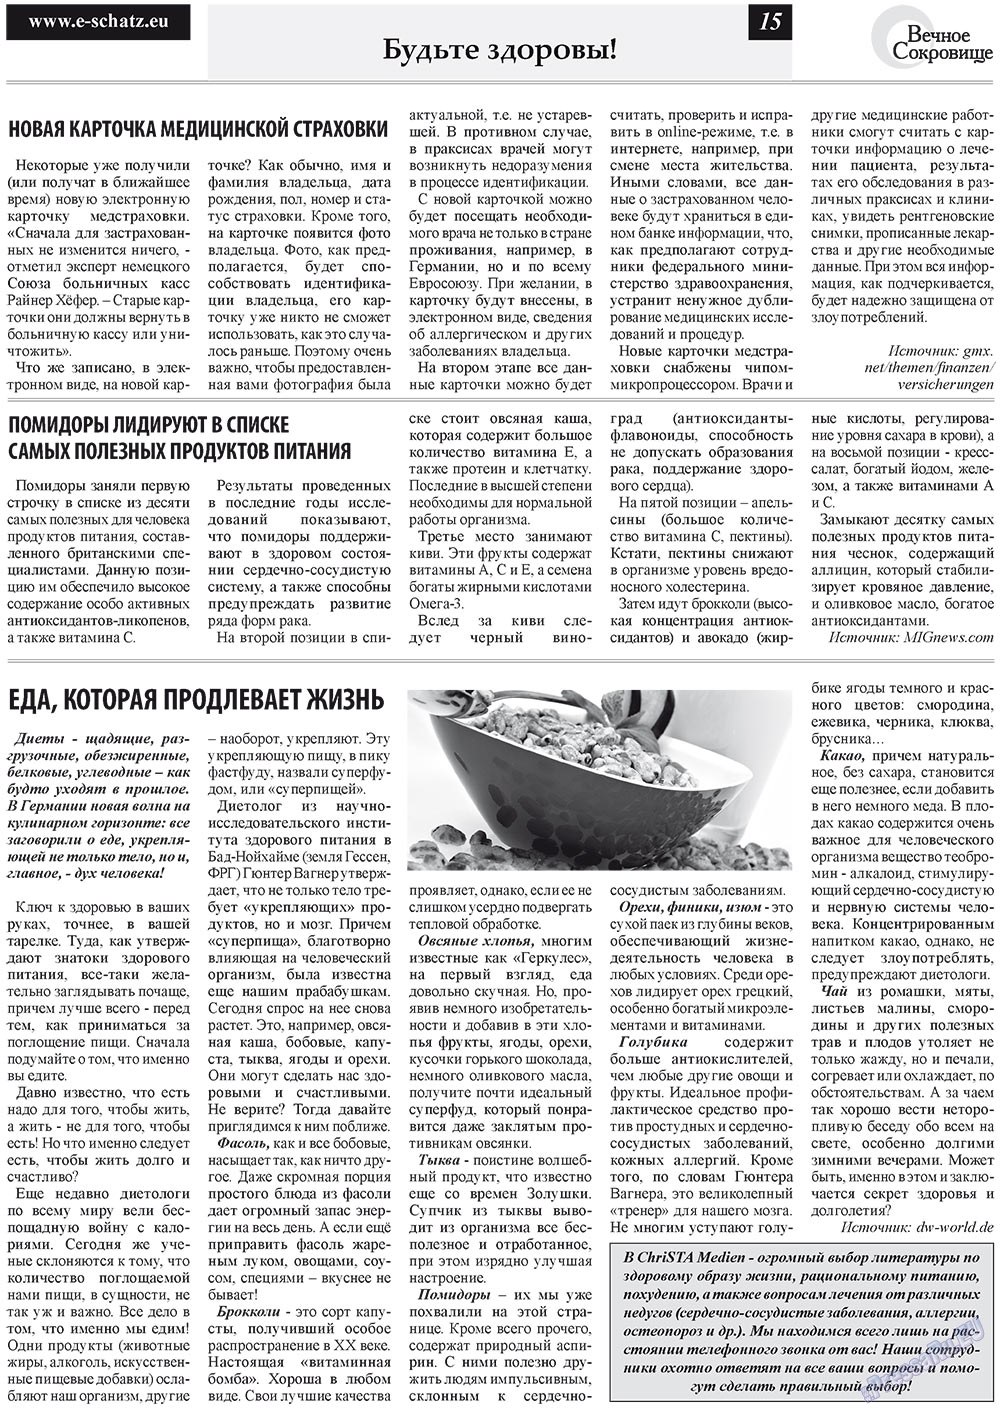 Вечное сокровище, газета. 2011 №6 стр.15